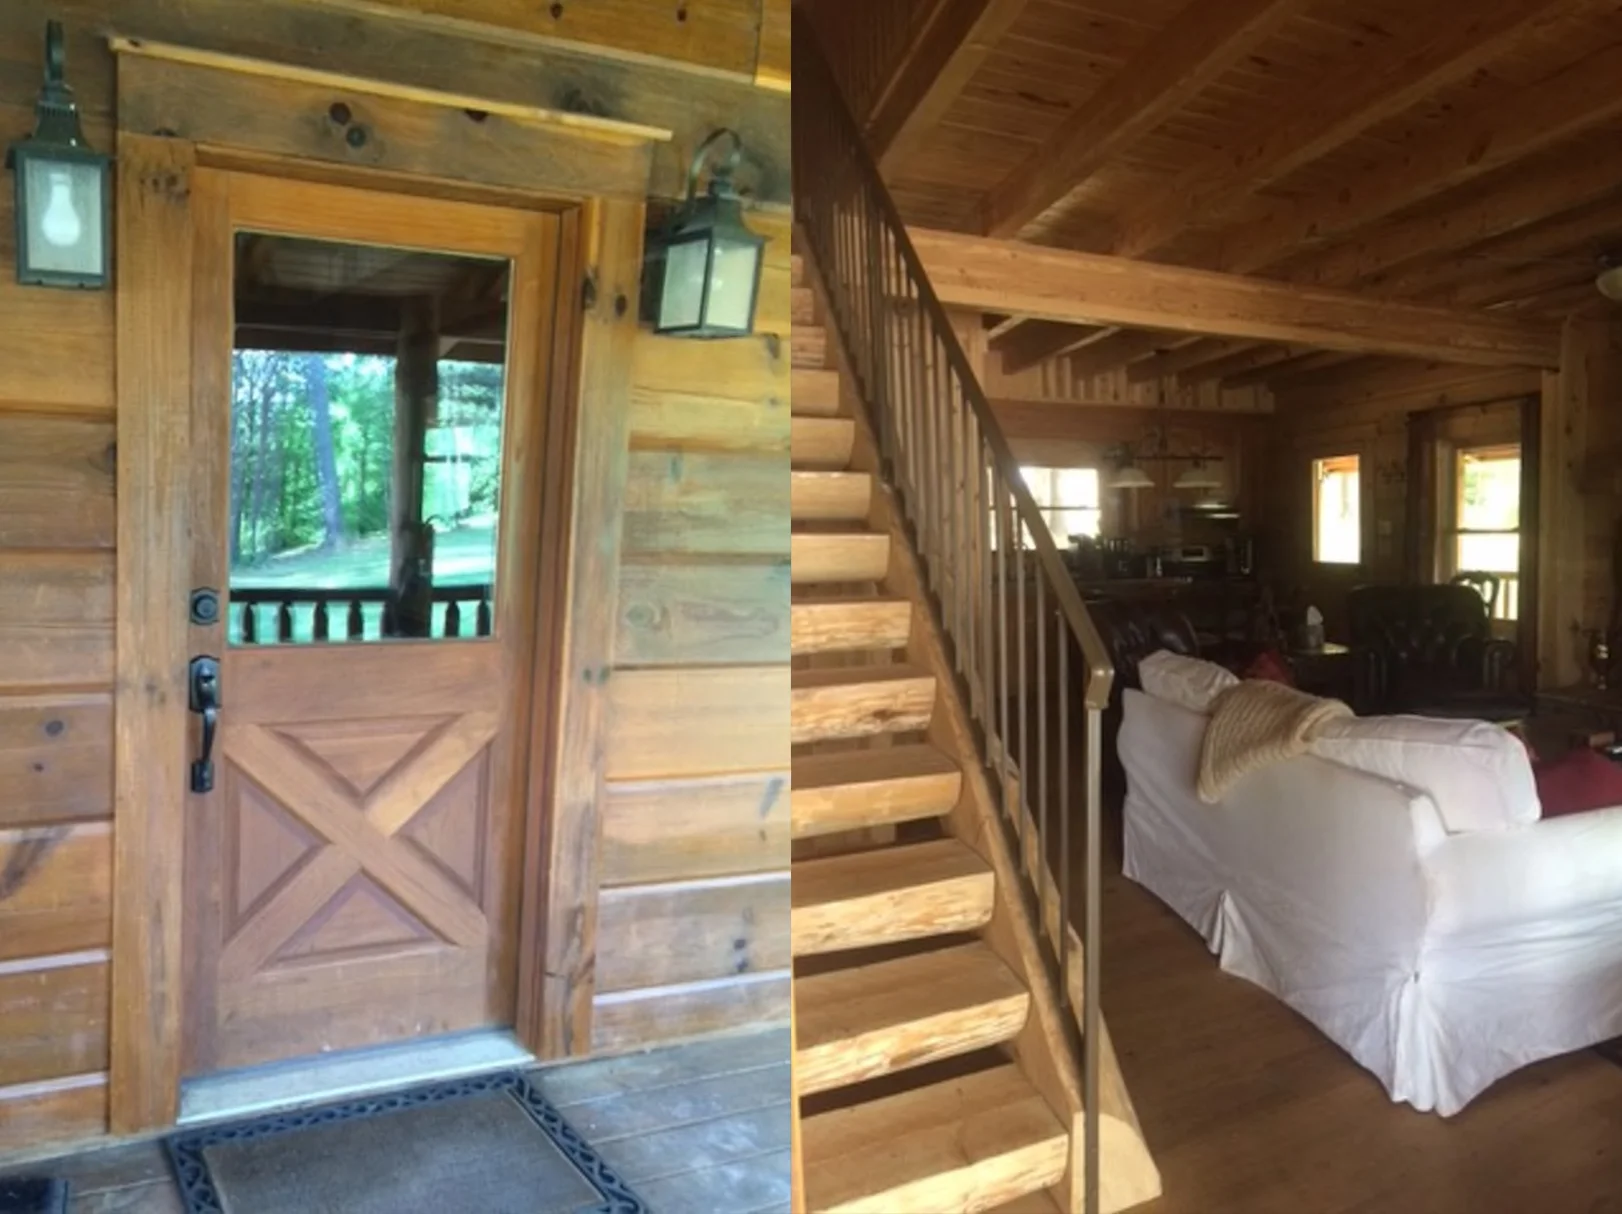 На Airbnb можна взяти в оренду будинок Тоні Старка з 'Месників' - фото 437408